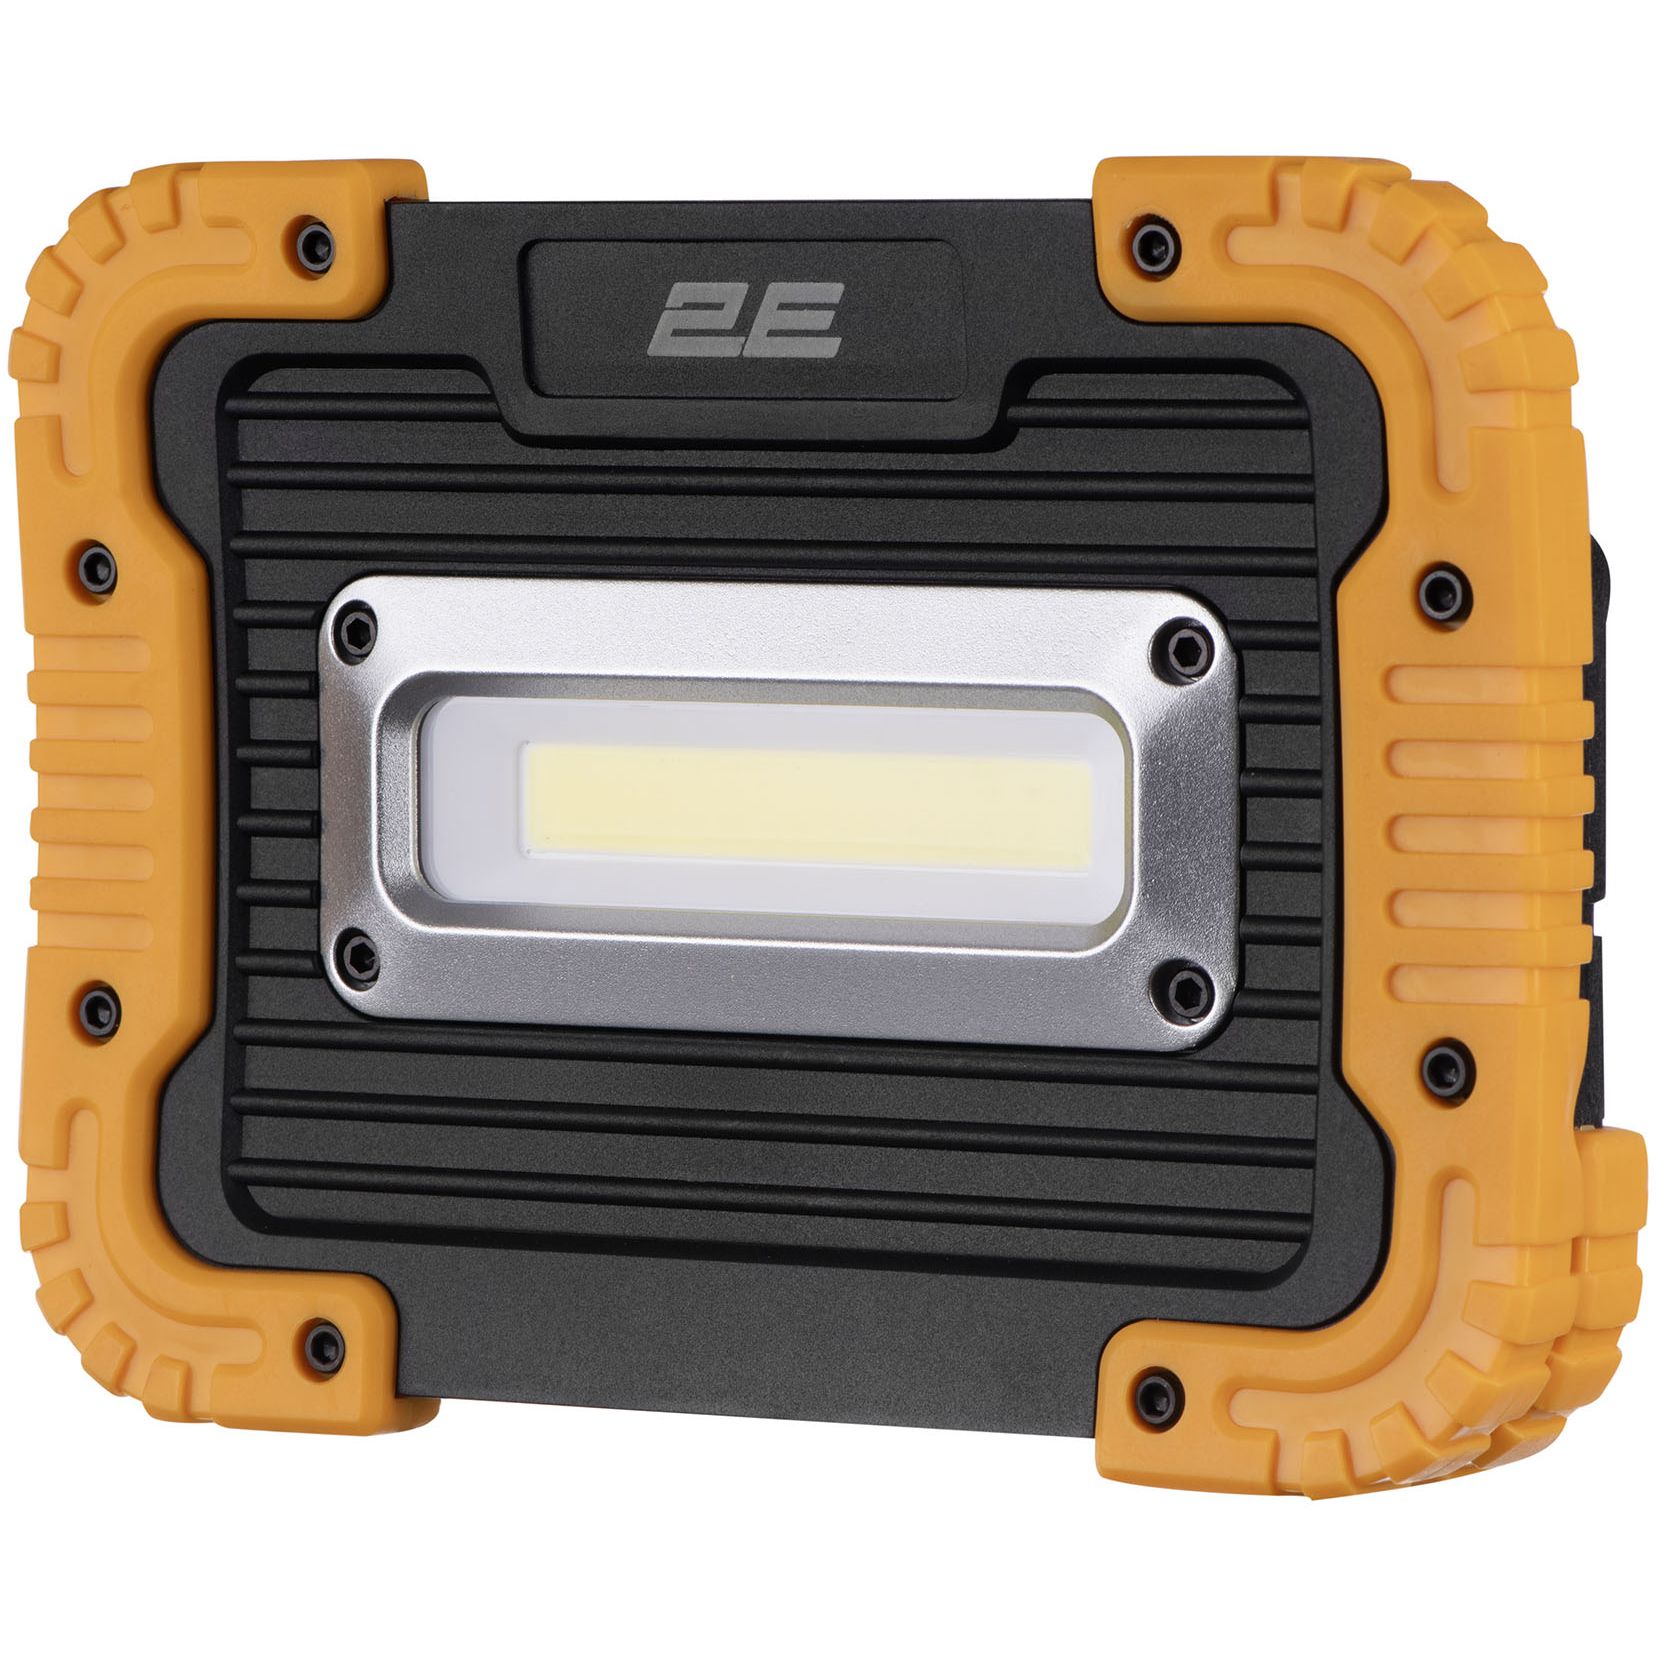 Прожектор аккумуляторный 2E Comfort Home 4400 мА/ч 3 функции освещения (2E-WLBL1844) - фото 2